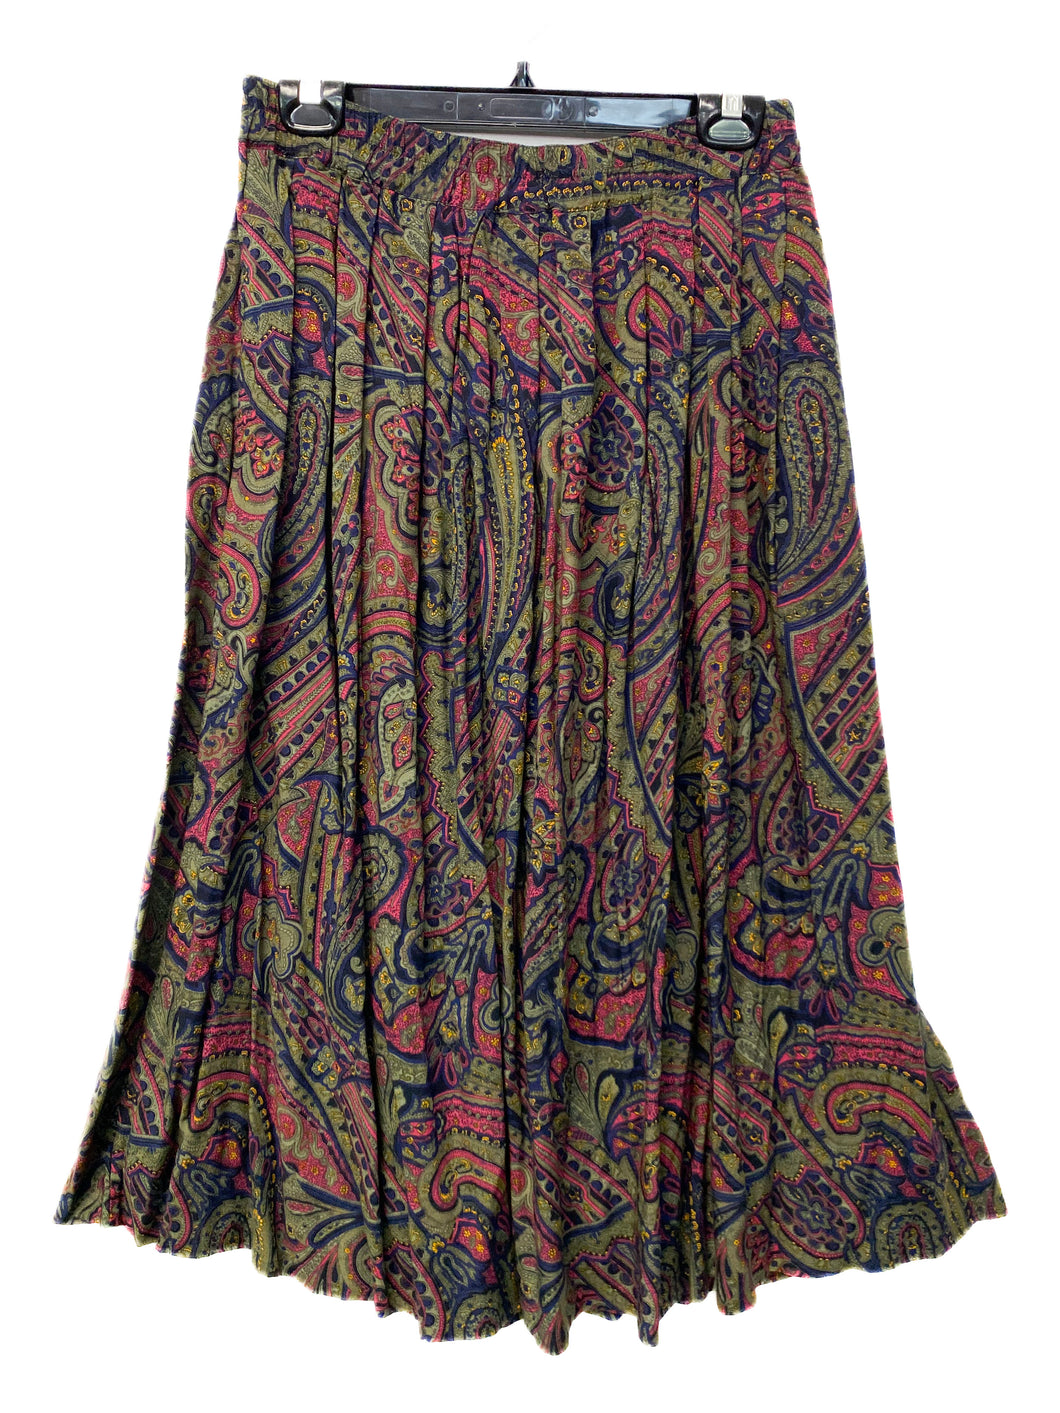 90's Della Spiga Skirt (10)